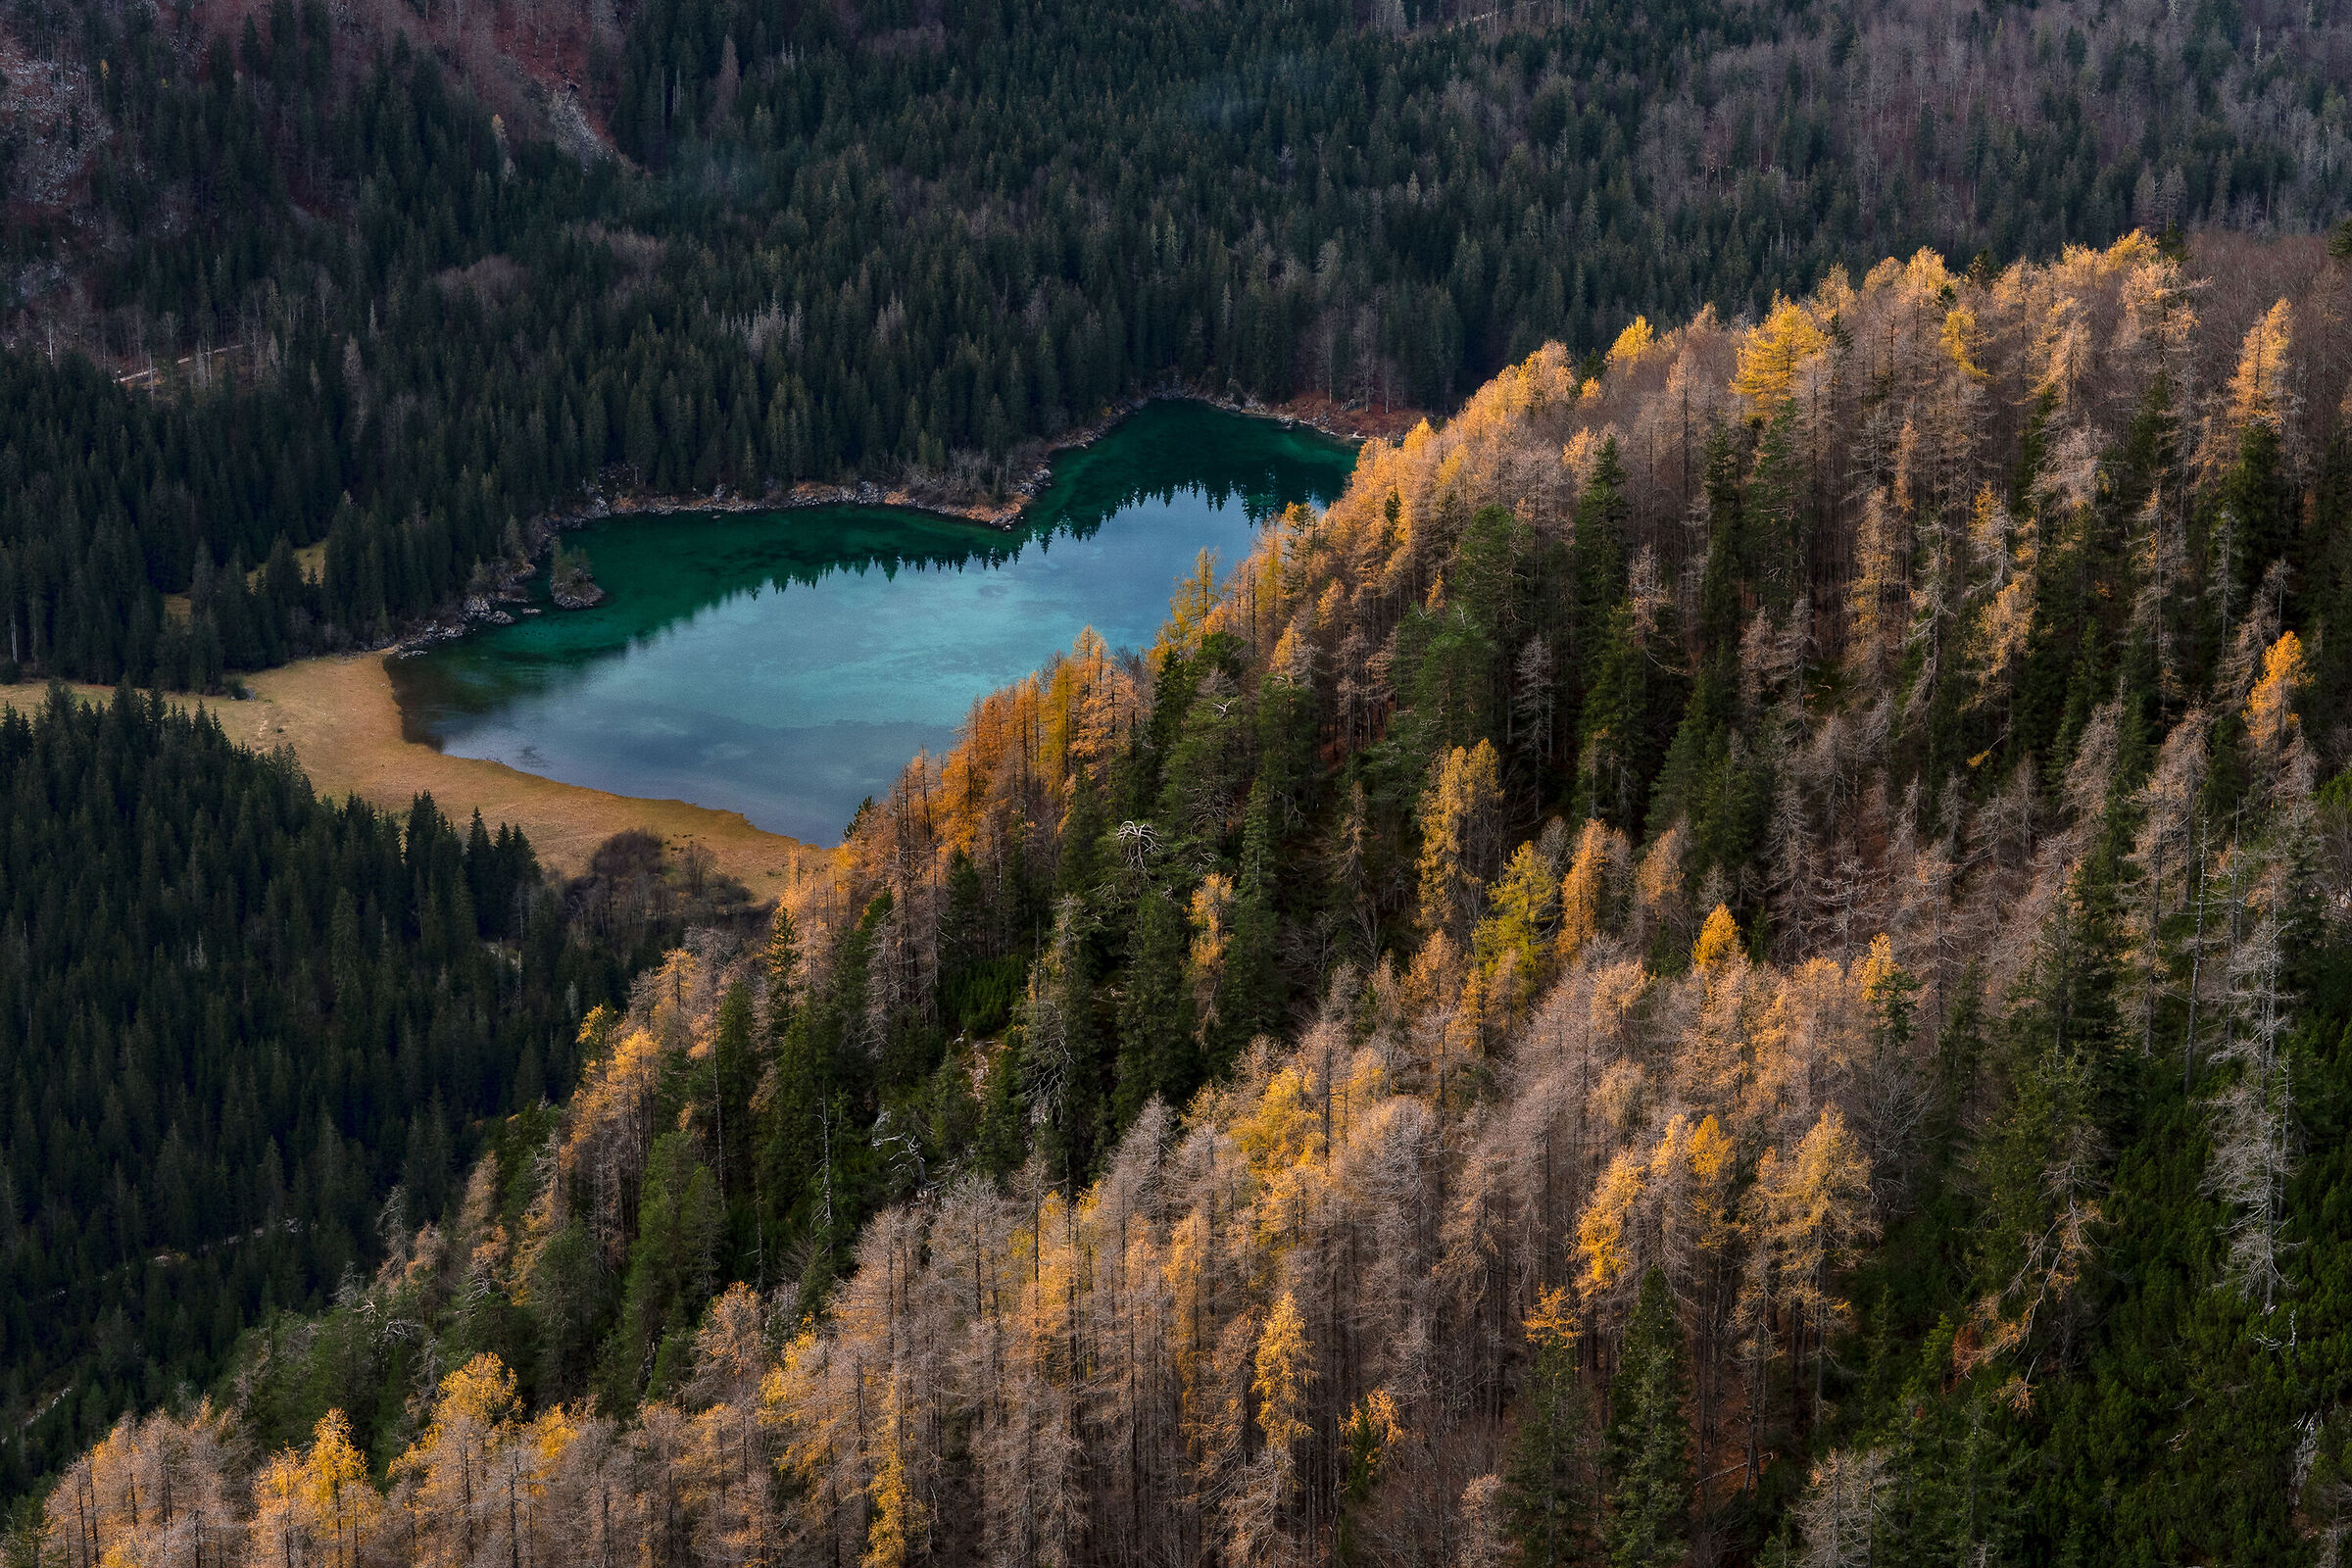 Last colors of autumn - Lago sup. di Fusine - Italy...